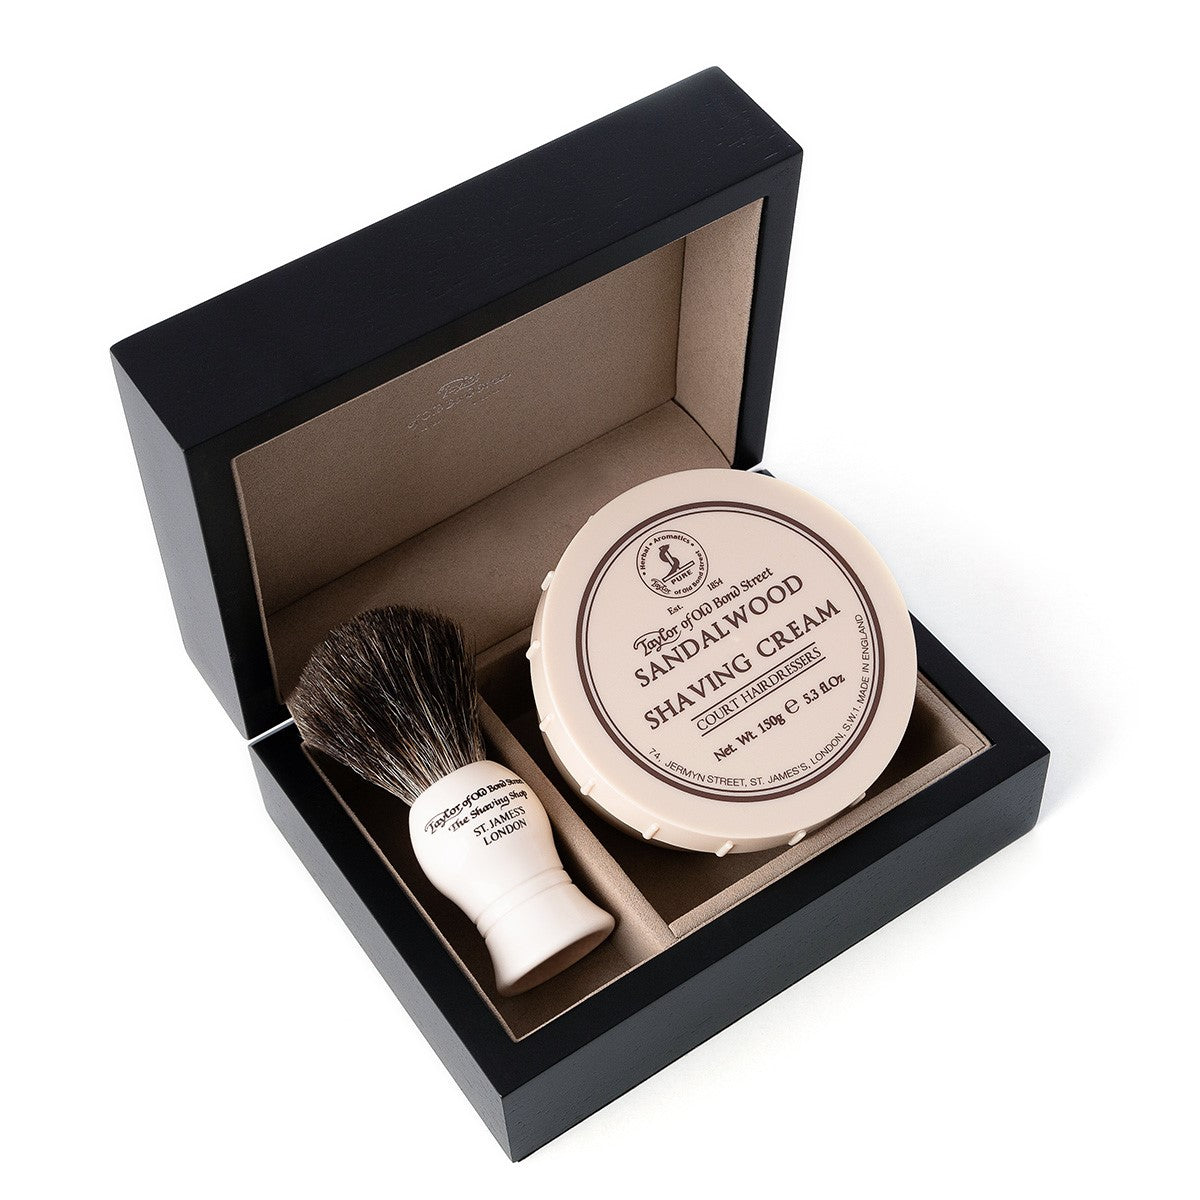 Sandalwood Shaving Cream & Shaving Brush in Wooden Gift Box